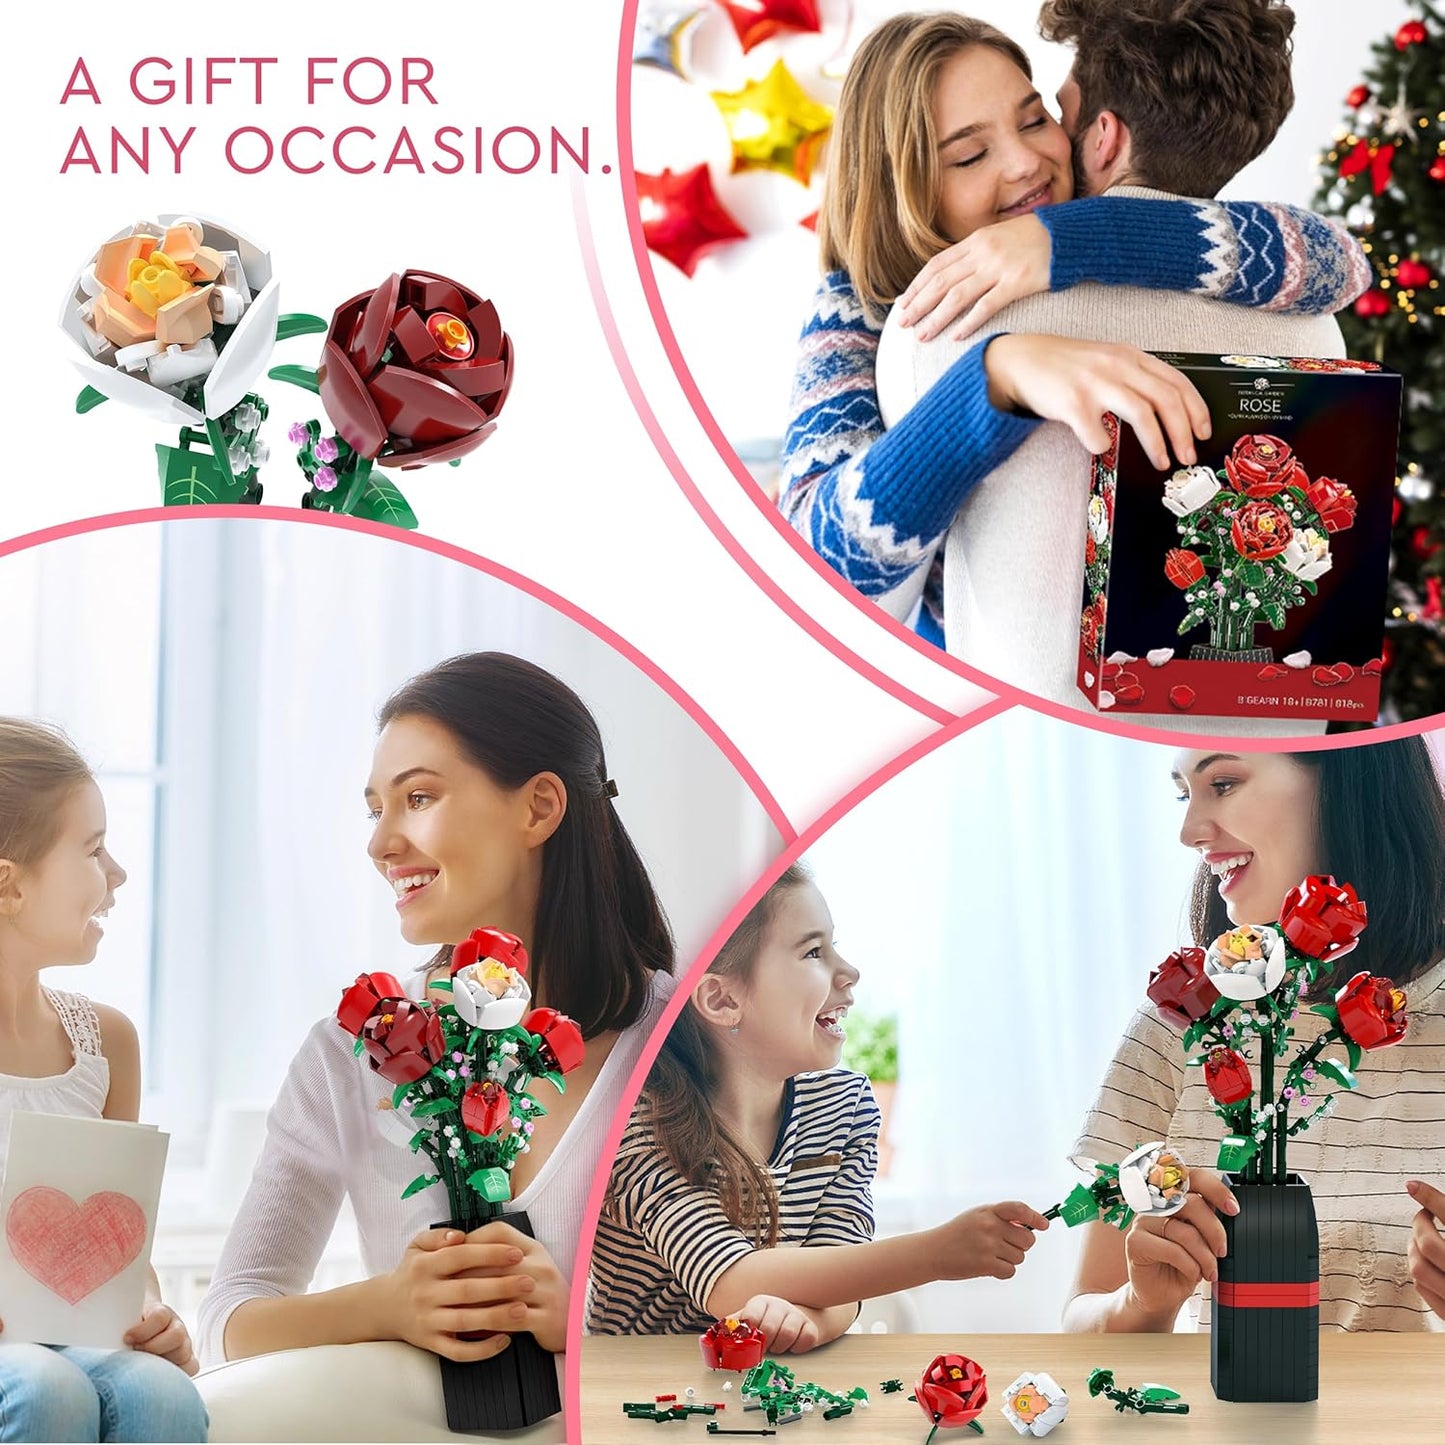 Blumenstrauß-Bausatz (818 Teile) – Weihnachts-, Muttertags- oder Valentinstagsgeschenk, ideal für Kinder, Frauen, Mädchen und Jungen, Rosen-Spielzeug-Bausatz mit Vase 